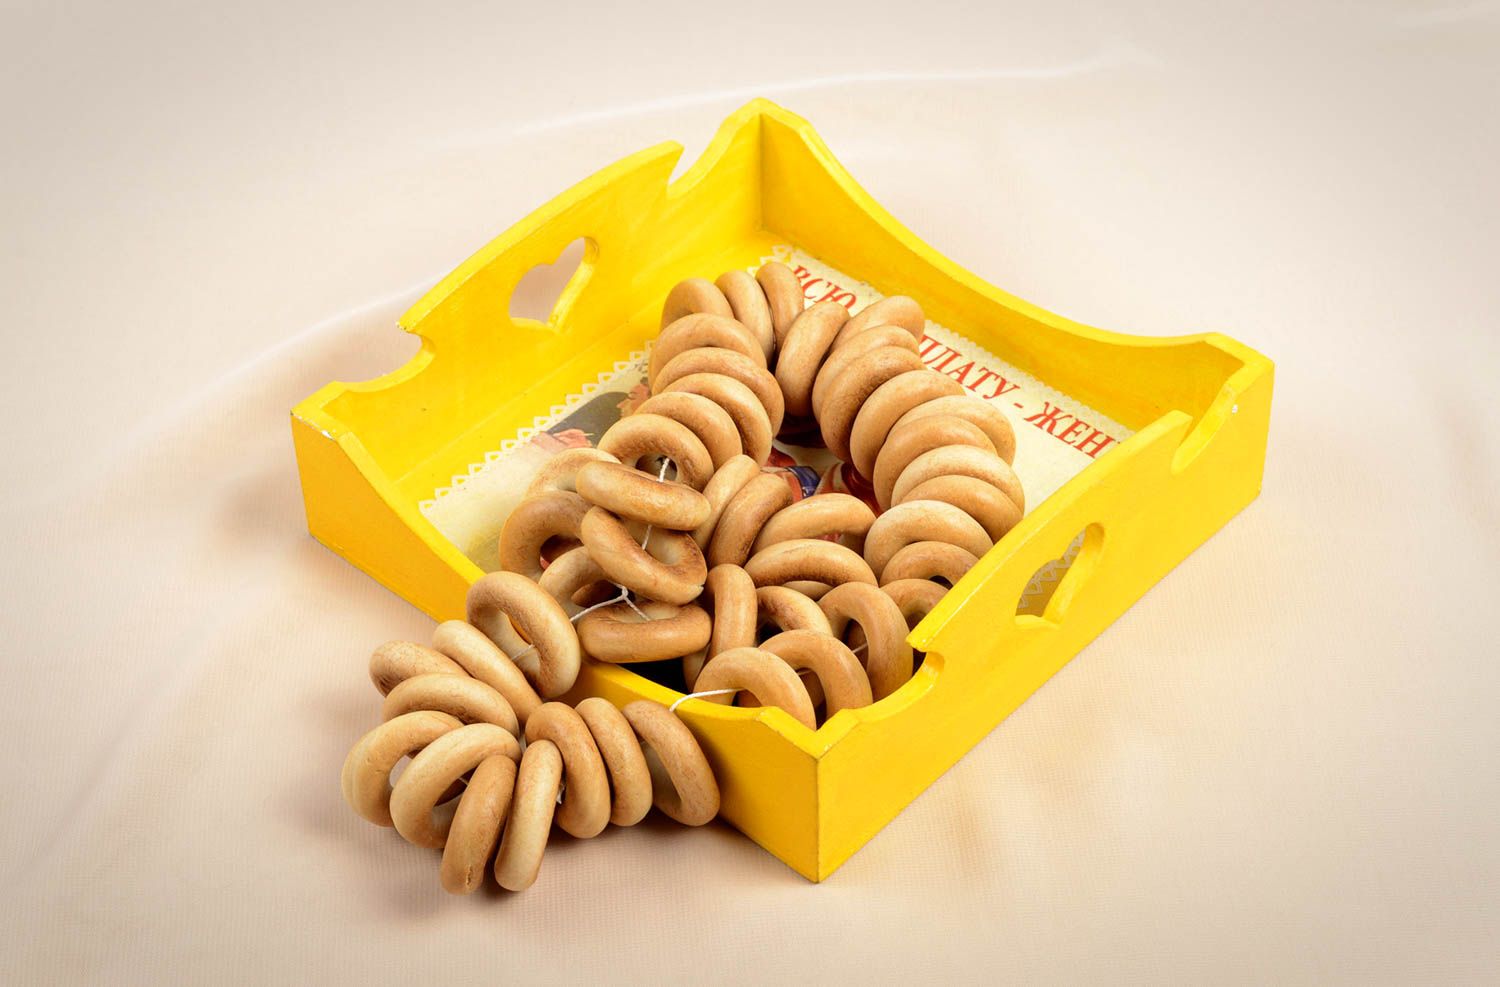 Handmade wooden bread tray unusual yellow tray stylish kitchen accessory photo 5